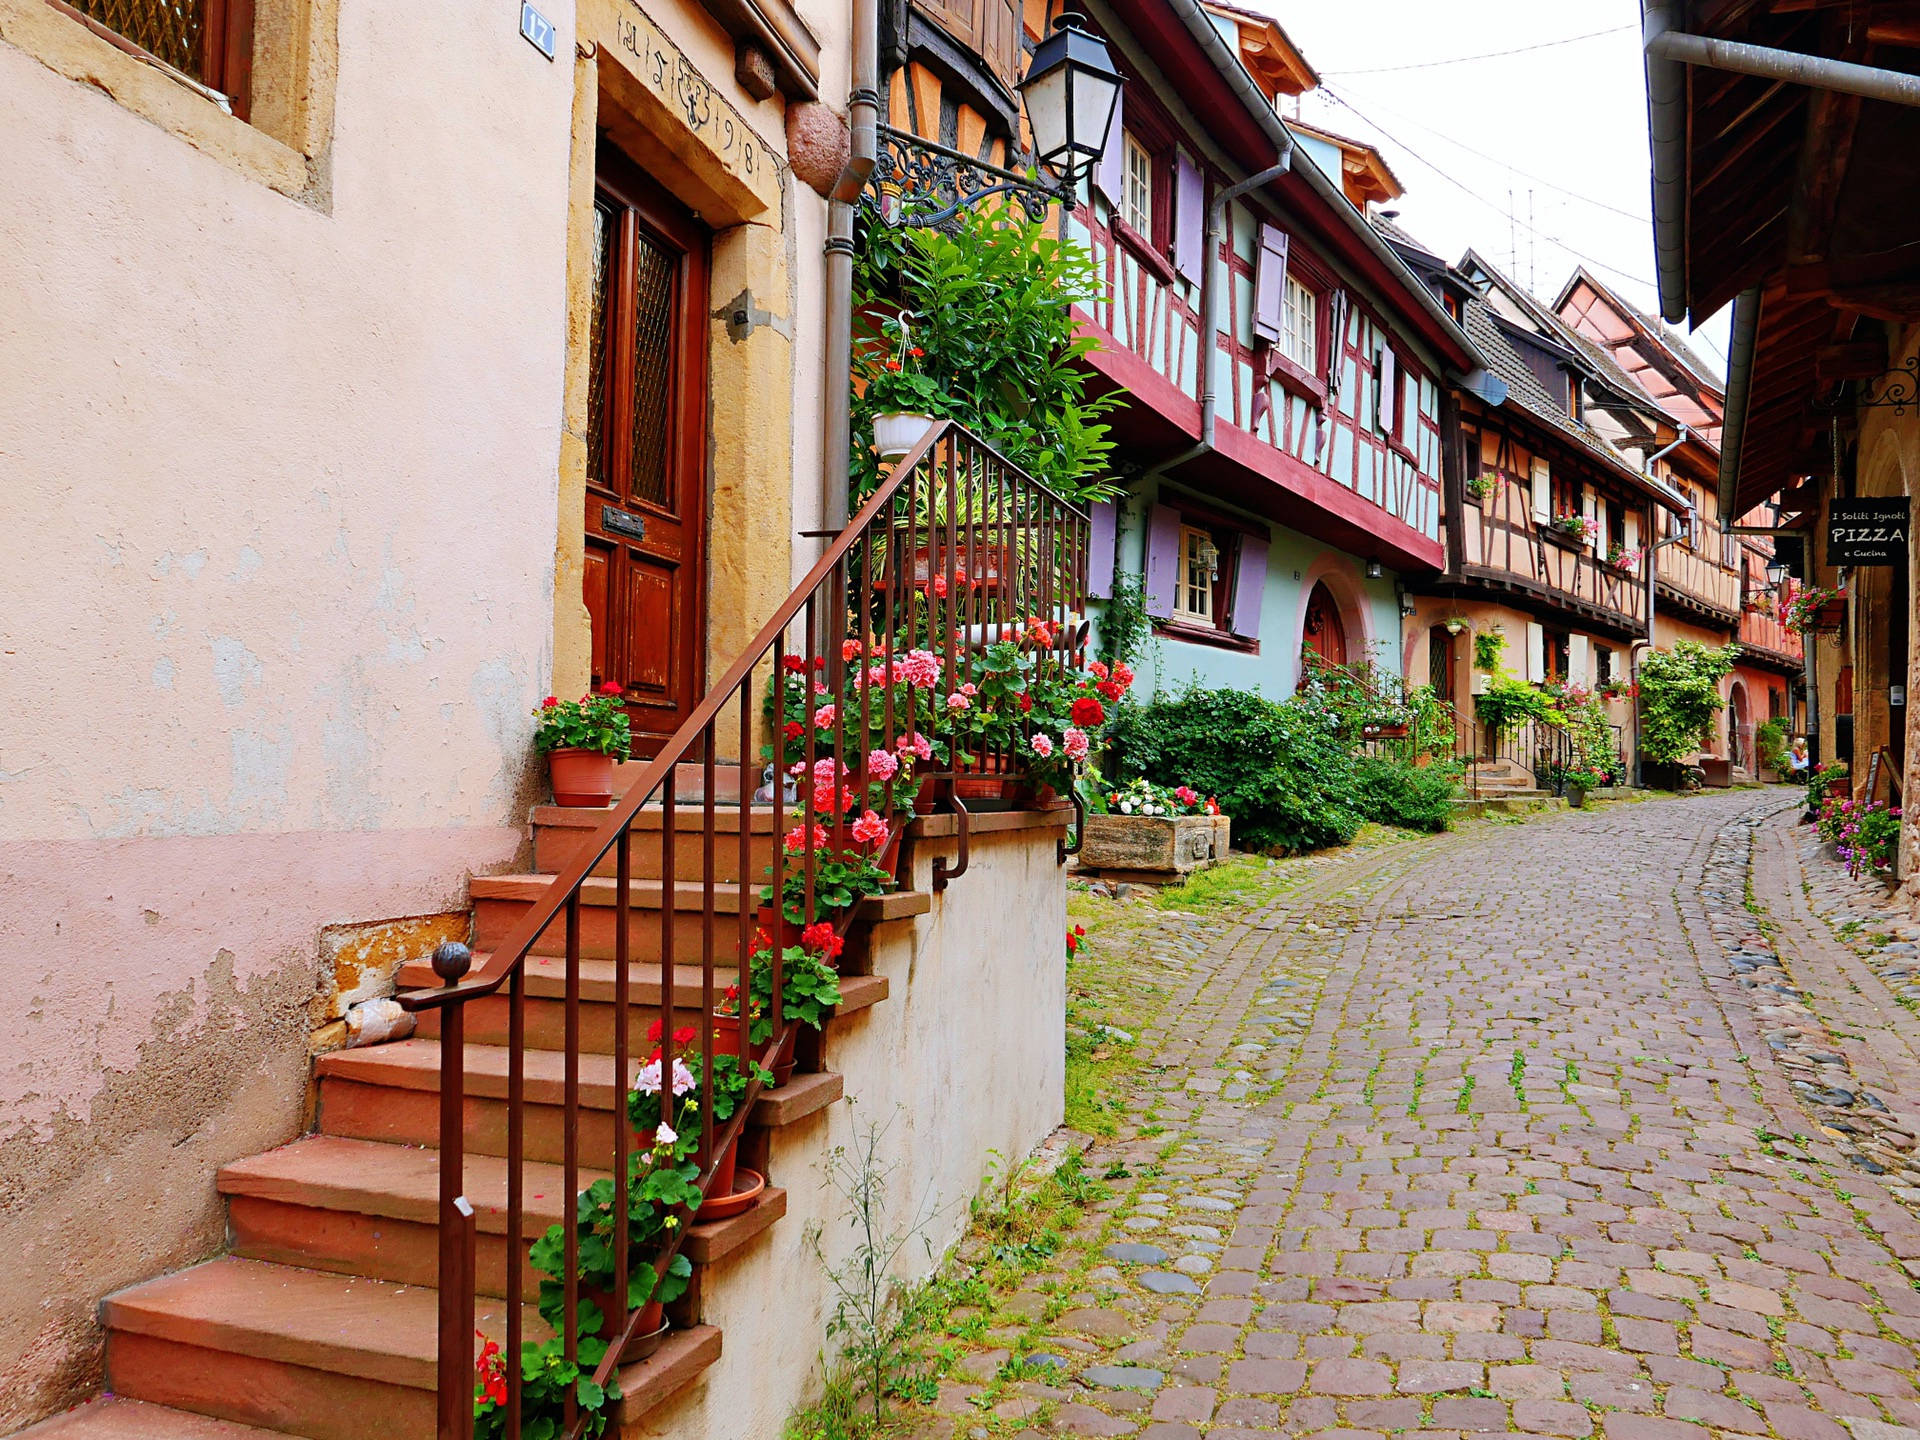 私藏在法国的最美小镇 颇具浓厚的中世纪色彩 美女红酒让人难忘_阿尔萨斯